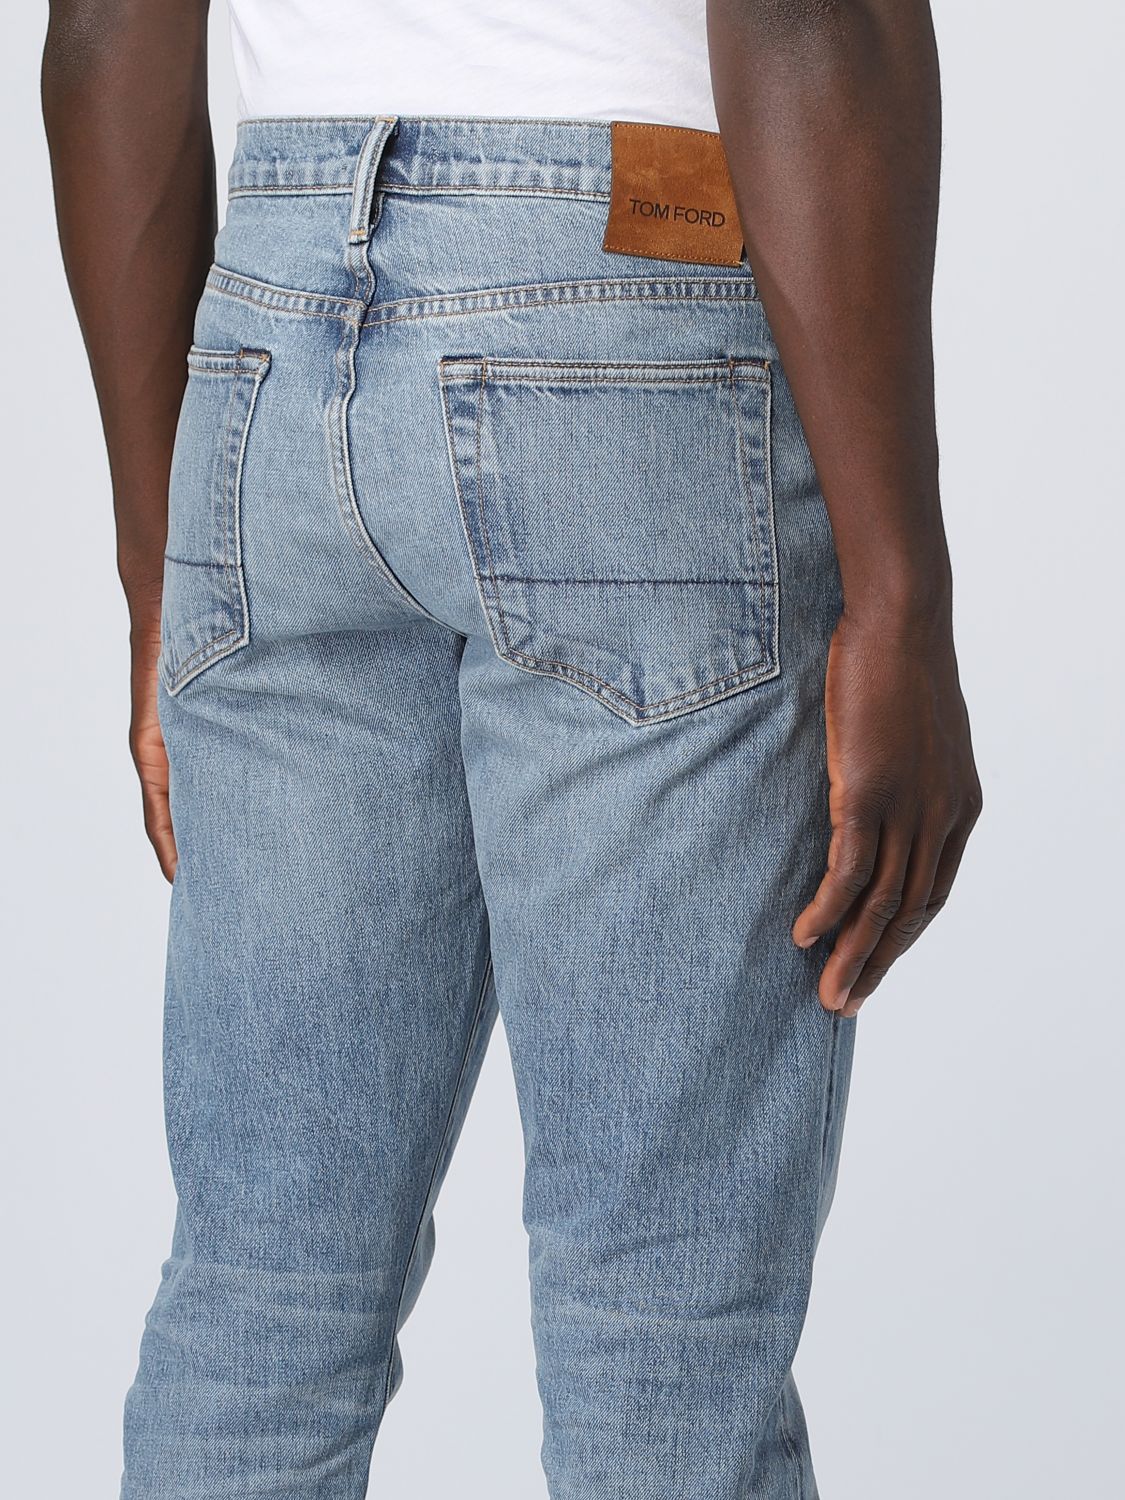 TOM FORD: Pantalones cortos para hombre, Negro | Pantalones Cortos Tom Ford  SSC001FMV004S23 en línea en 